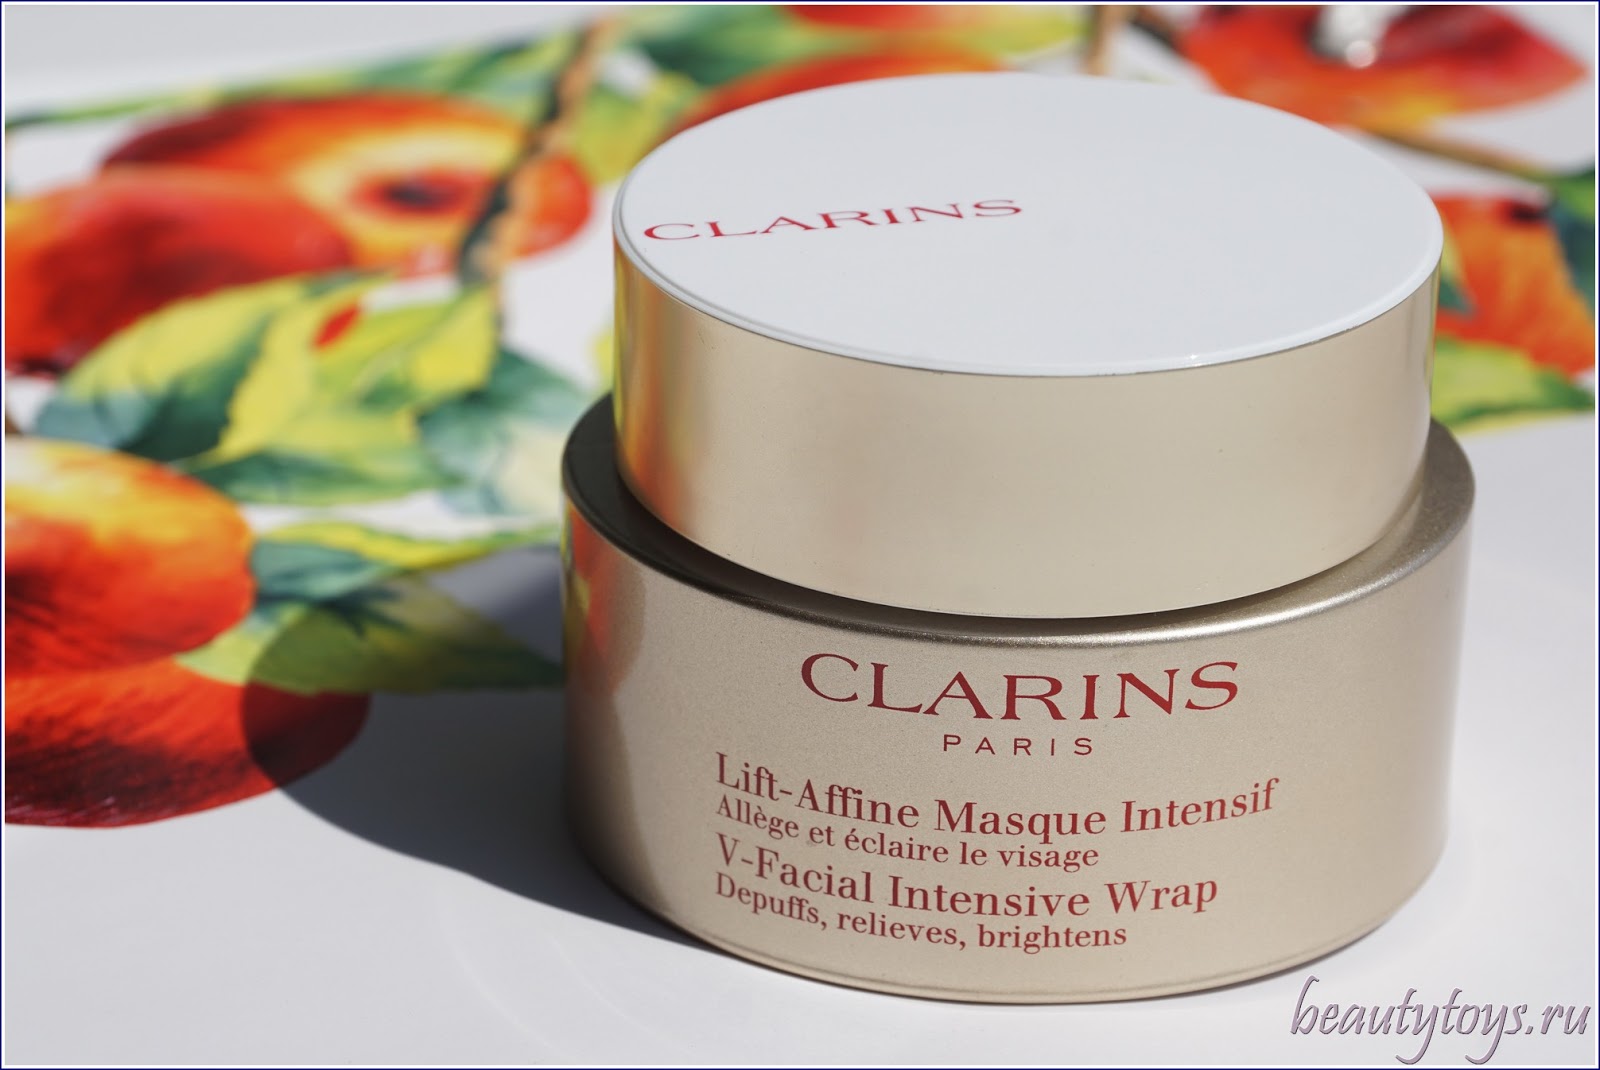 Clarins V-Facial Intensive Wrap Моделирующая маска с дренирующим эффектом.